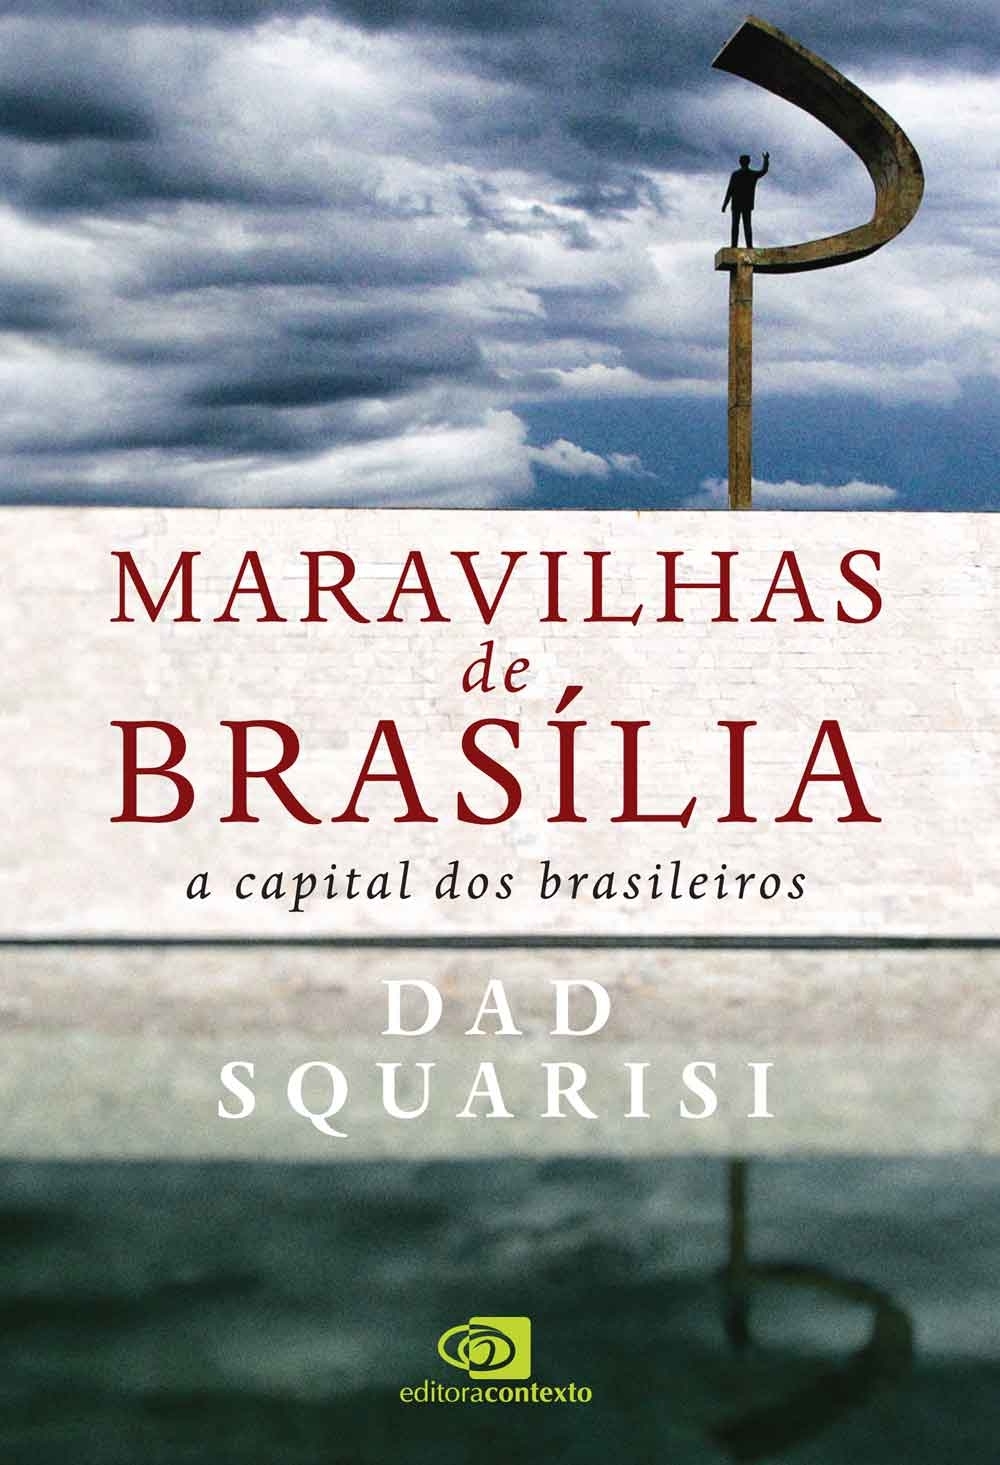 Maravilhas de Brasília: a capital dos brasileiros